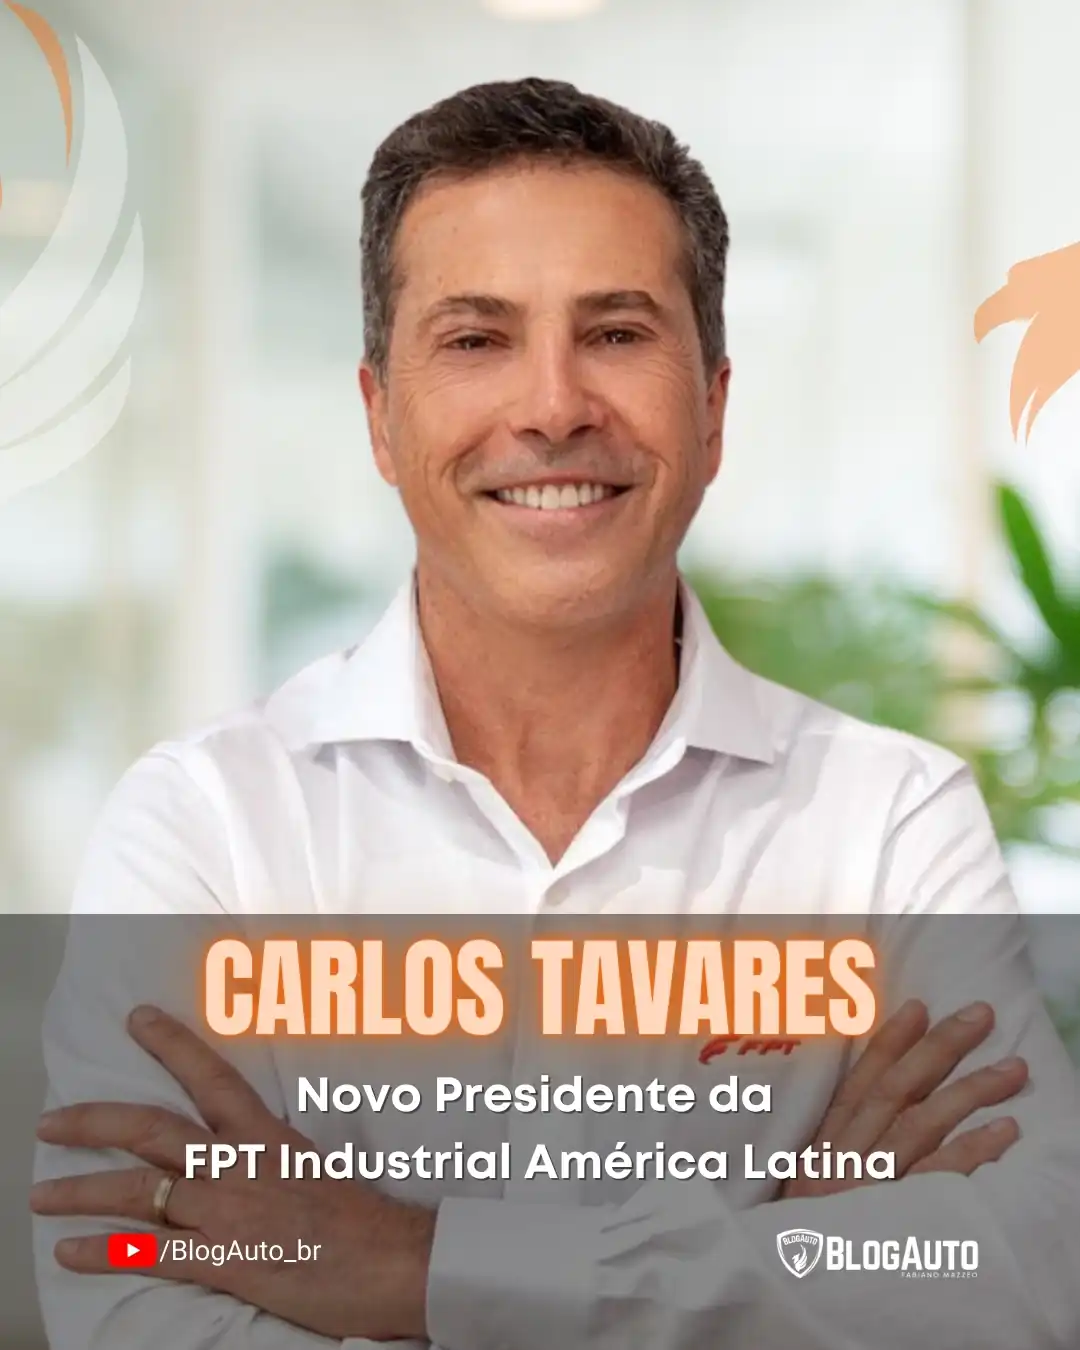 Carlos Tavares